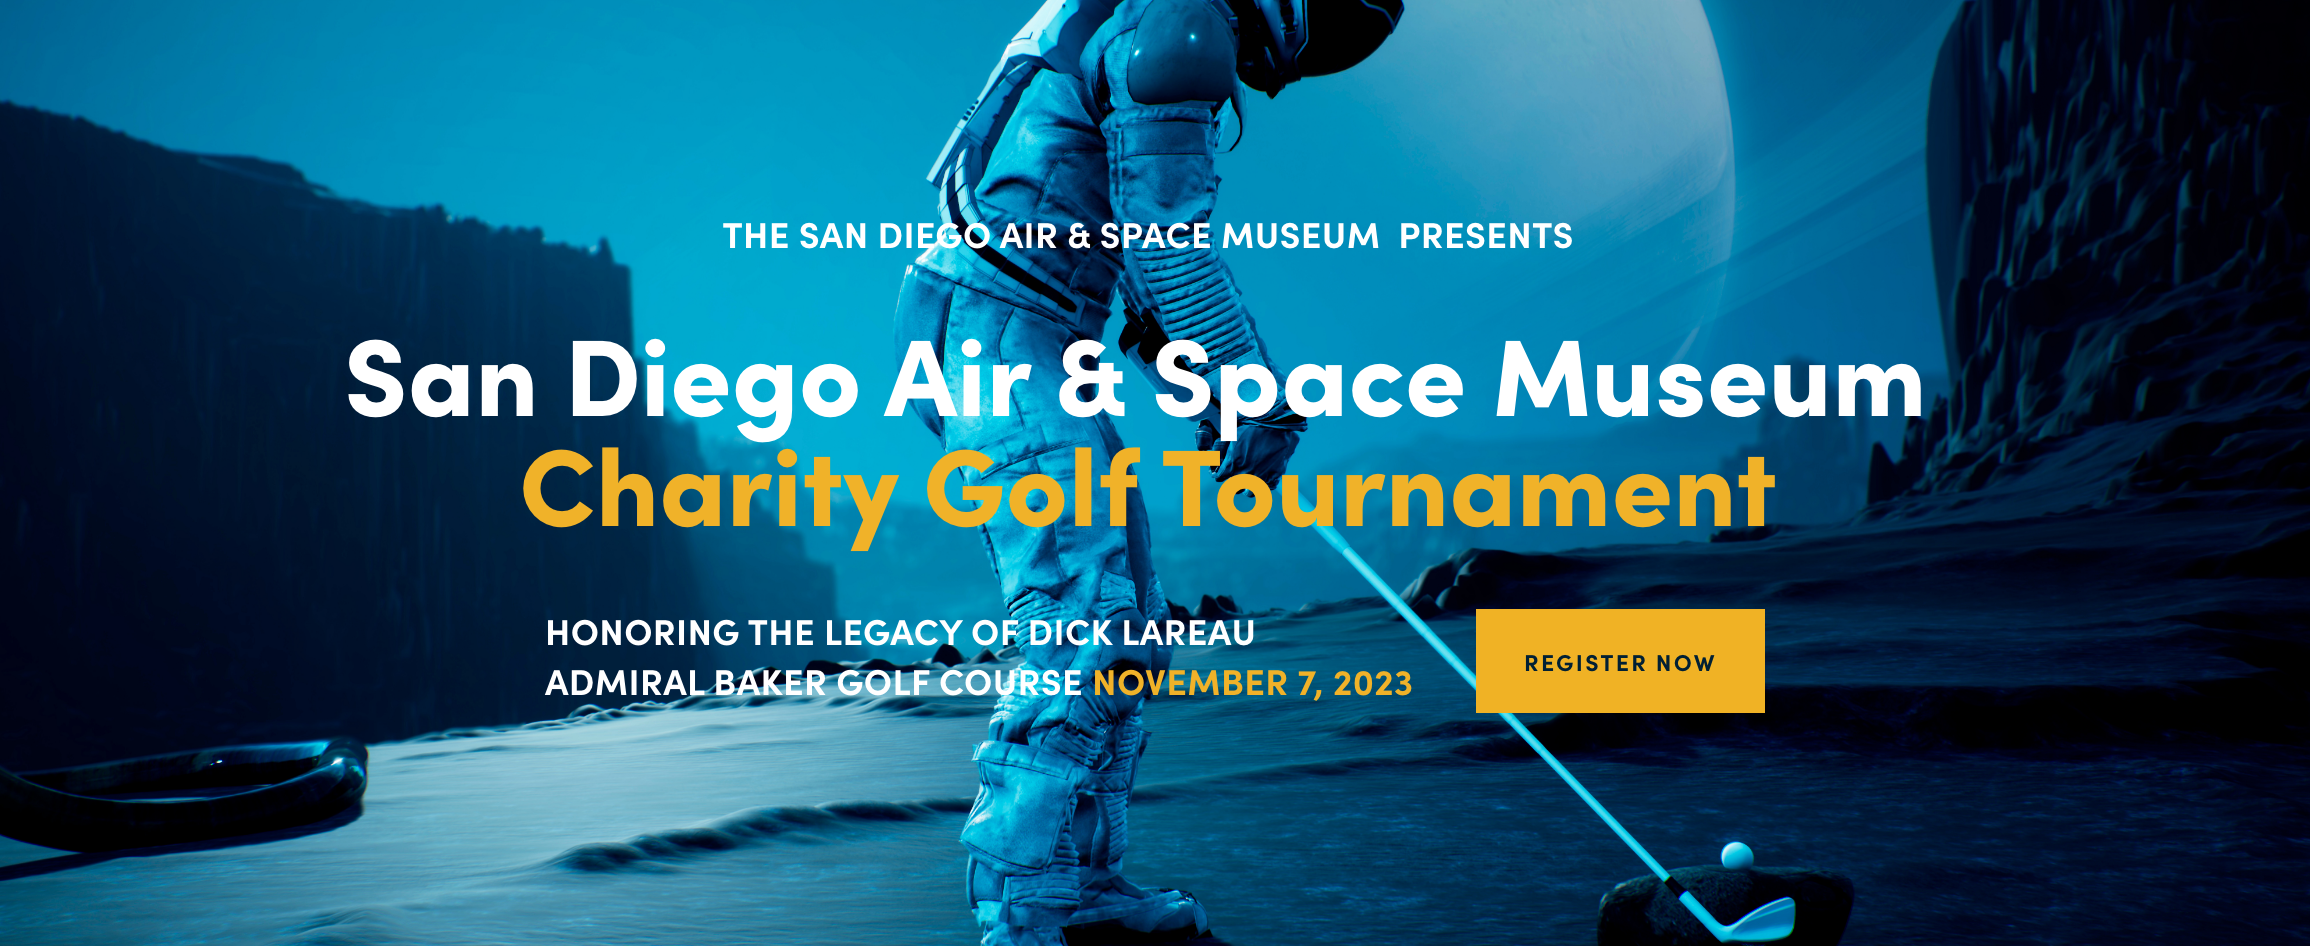 Dick Lareau Memorial Charity Golf Tournament